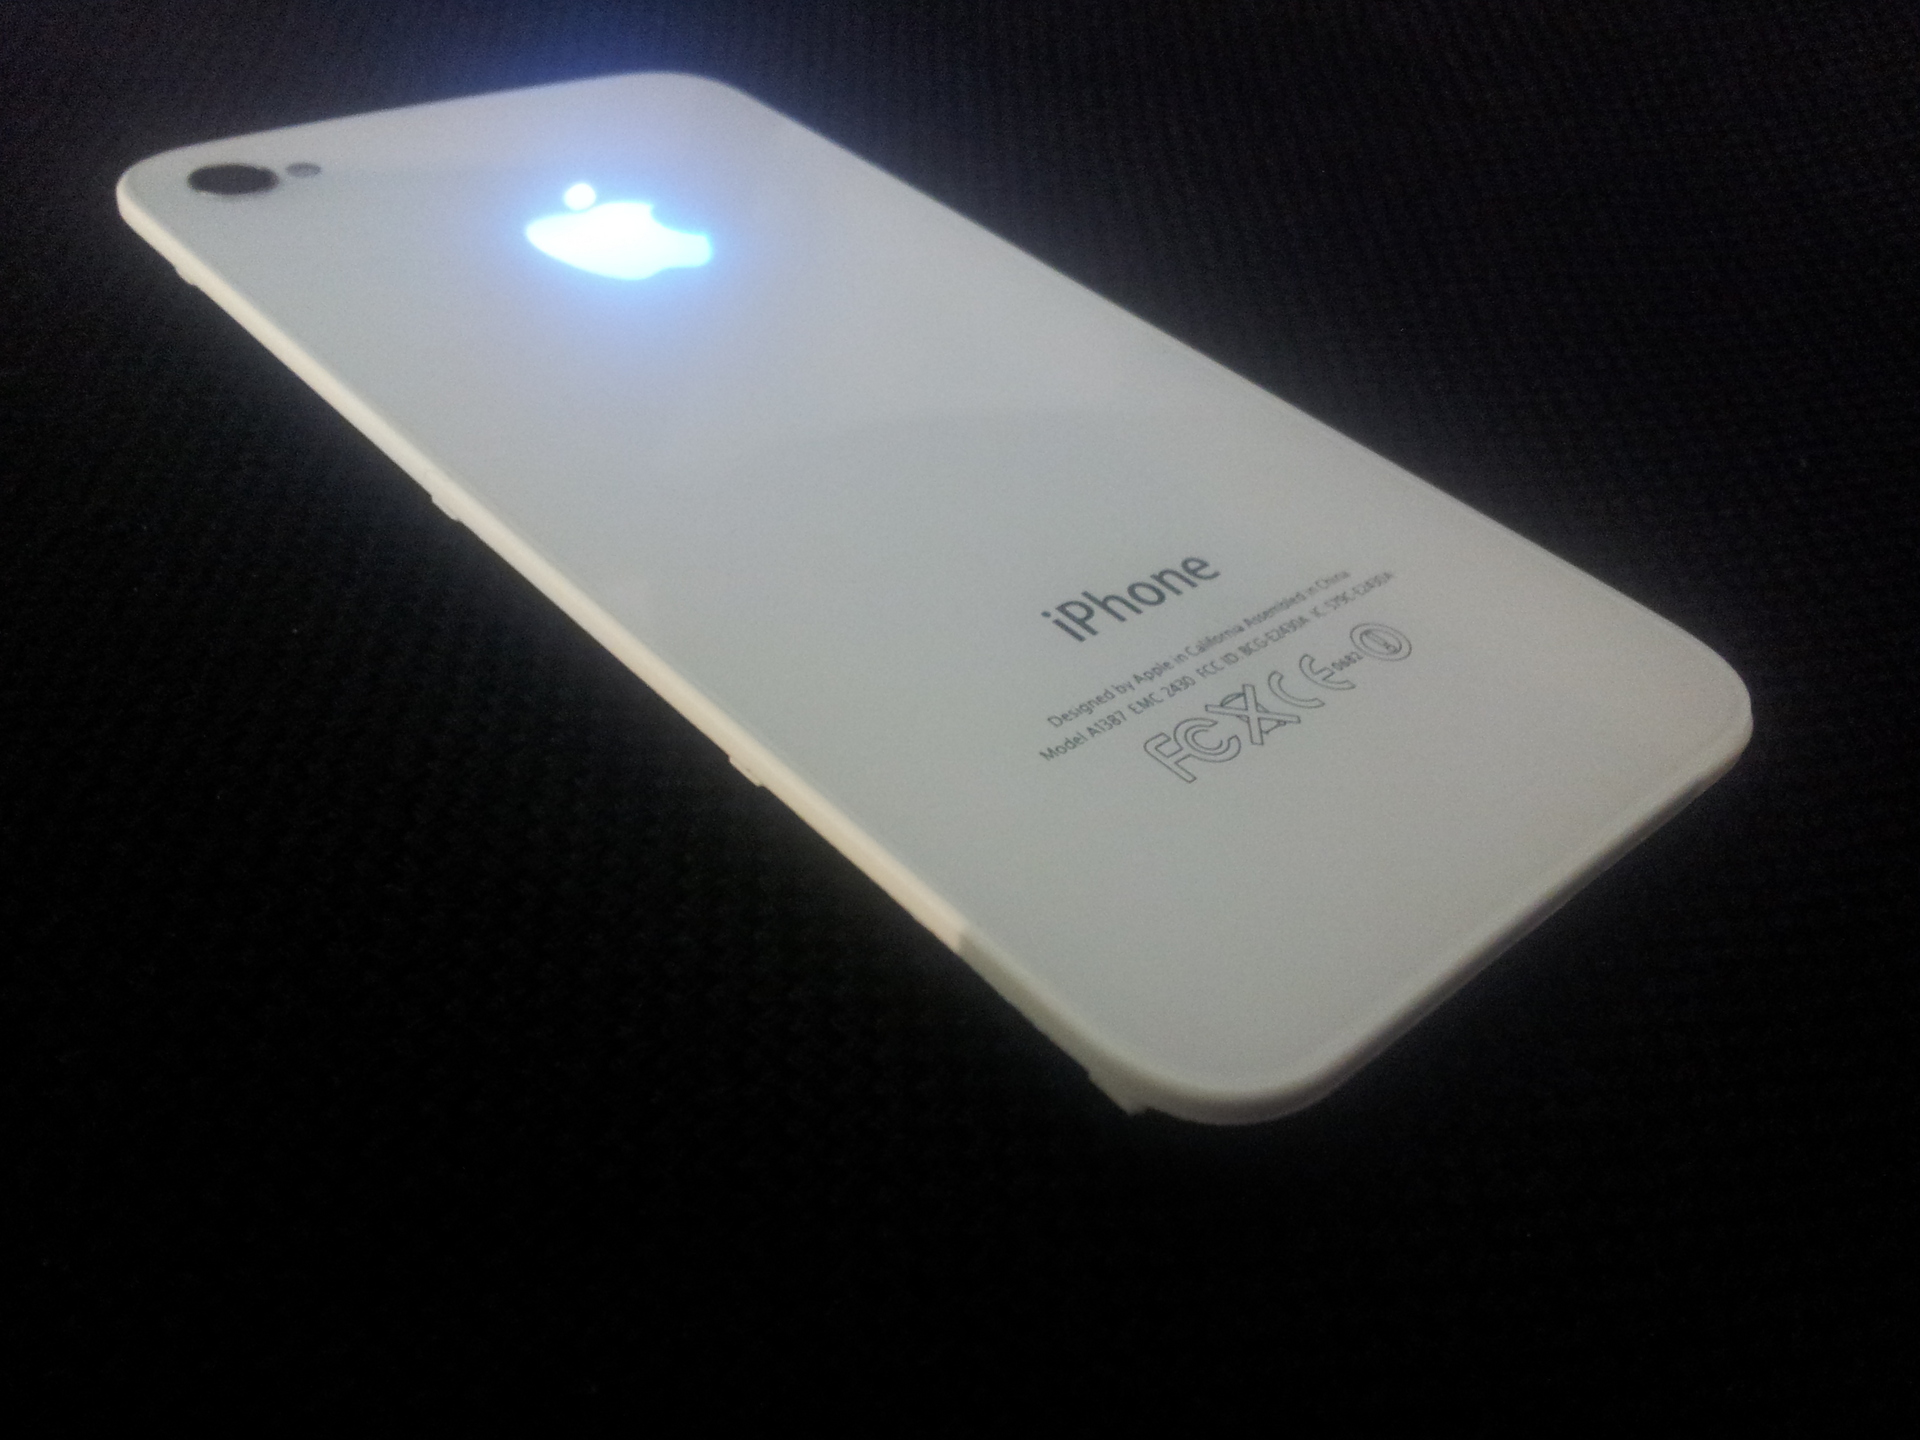 Светящееся яблоко на iPhone 6 и iPhone 6s своими руками – пошаговое руководство